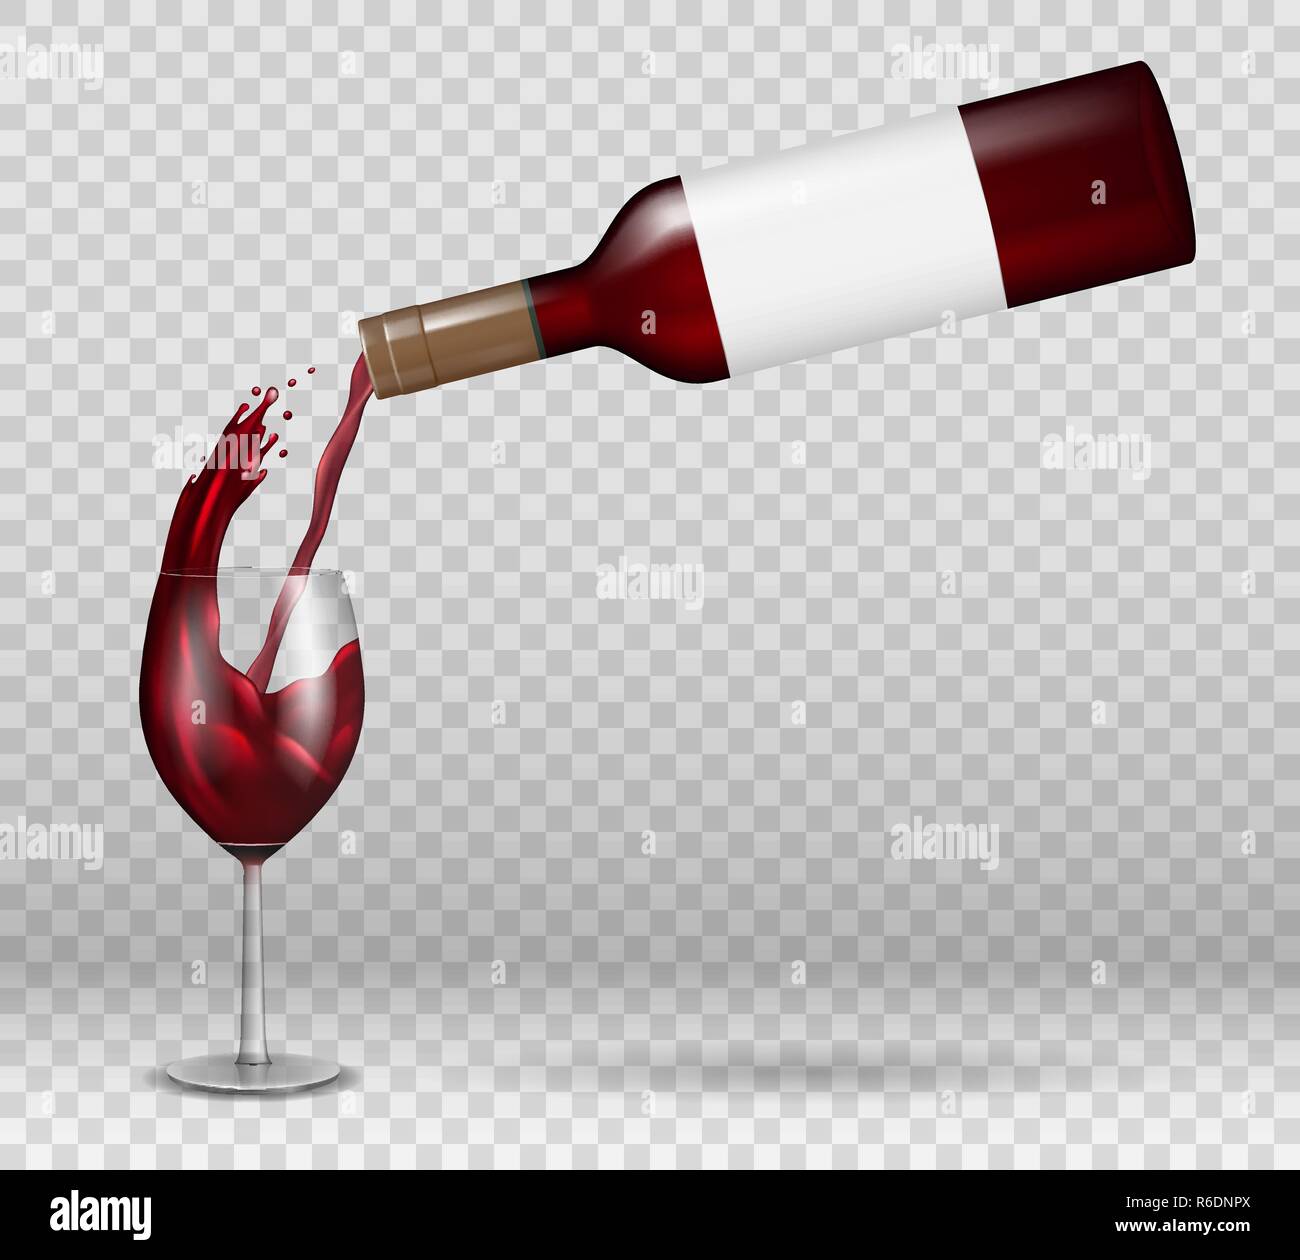 Bouteille de vin transparente et maquette de verre de vin avec réflexion. Liquide de vin rouge versé avec éclaboussures dans le verre isolé. Boisson alcoolisée avec gouttes Illustration de Vecteur